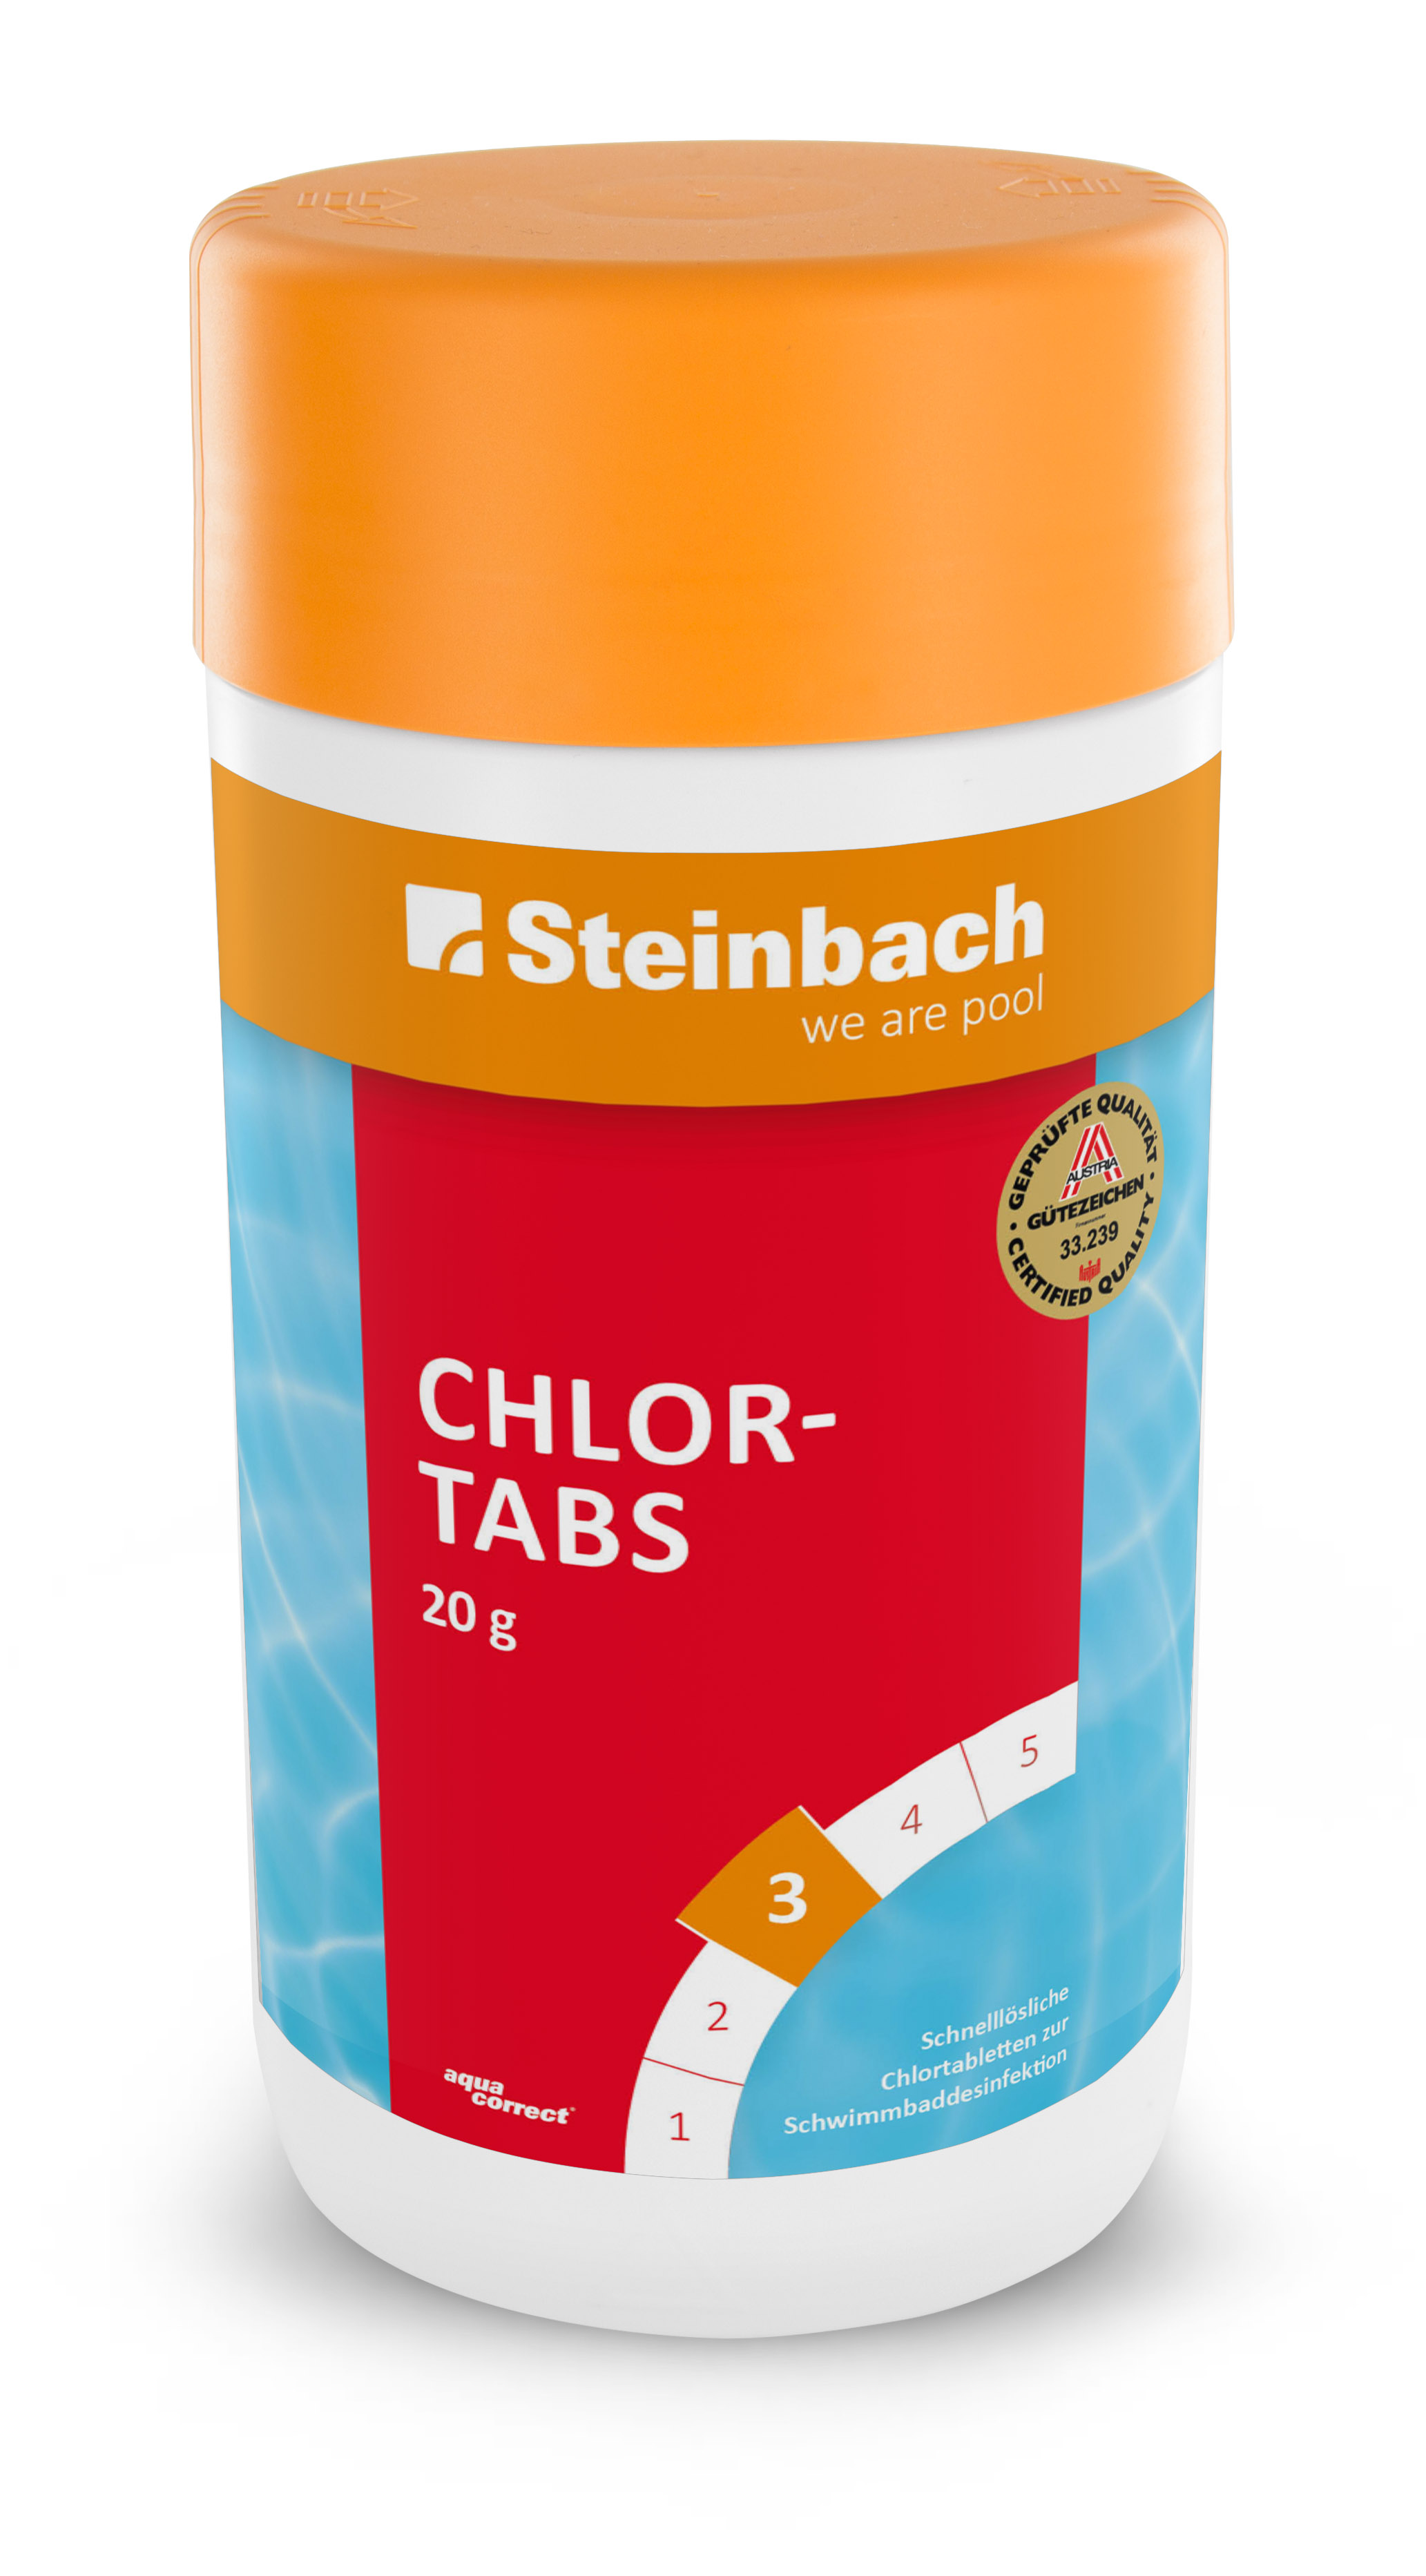 Steinbach Chlortabs 20g organisch, 1 kg